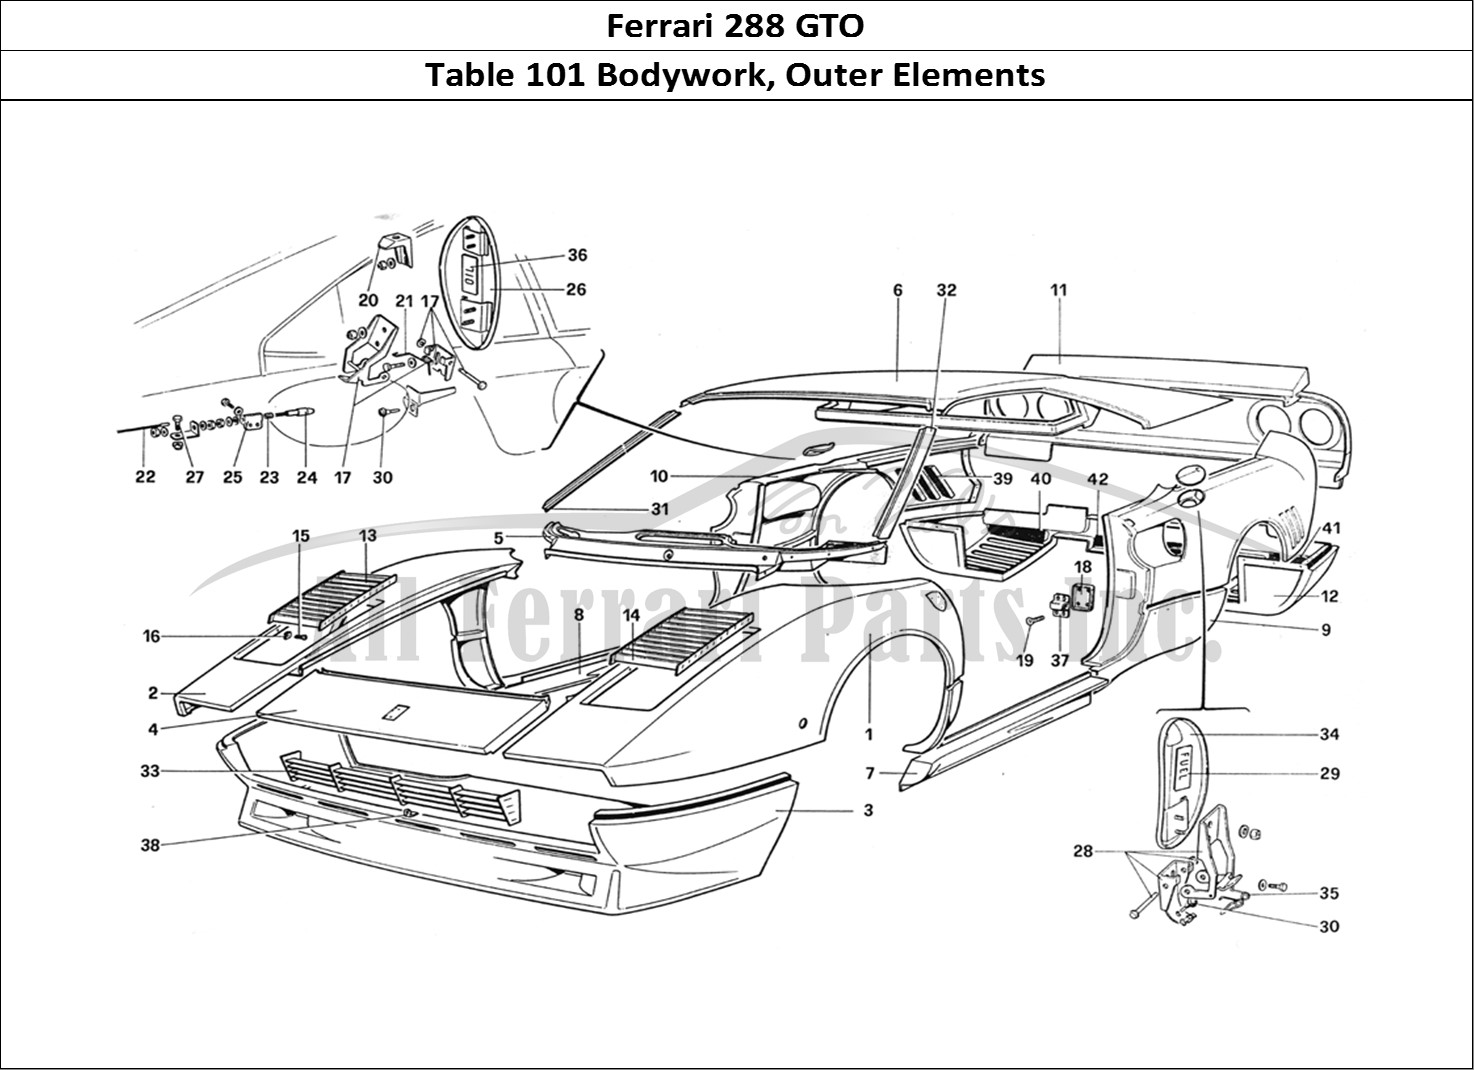 Ferrari Parts Ferrari 288 GTO Page 101 Body Shell - Outer Elemen